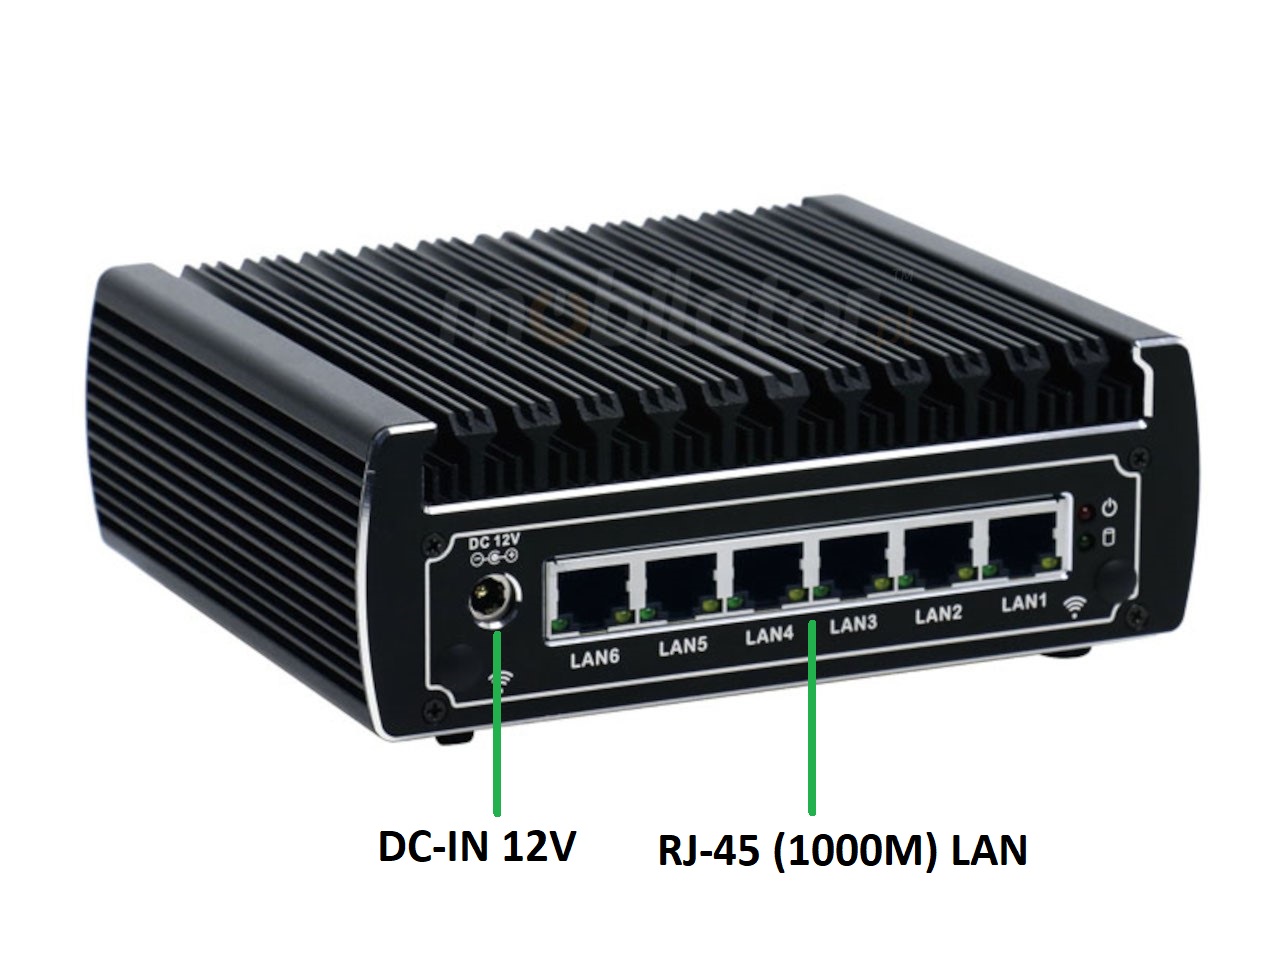   IBOX N133 v.11, zcza ty SSD DDR4 , przemysowy, may, szybki, niezawodny, fanless, industrial, small, LAN, INTEL i3